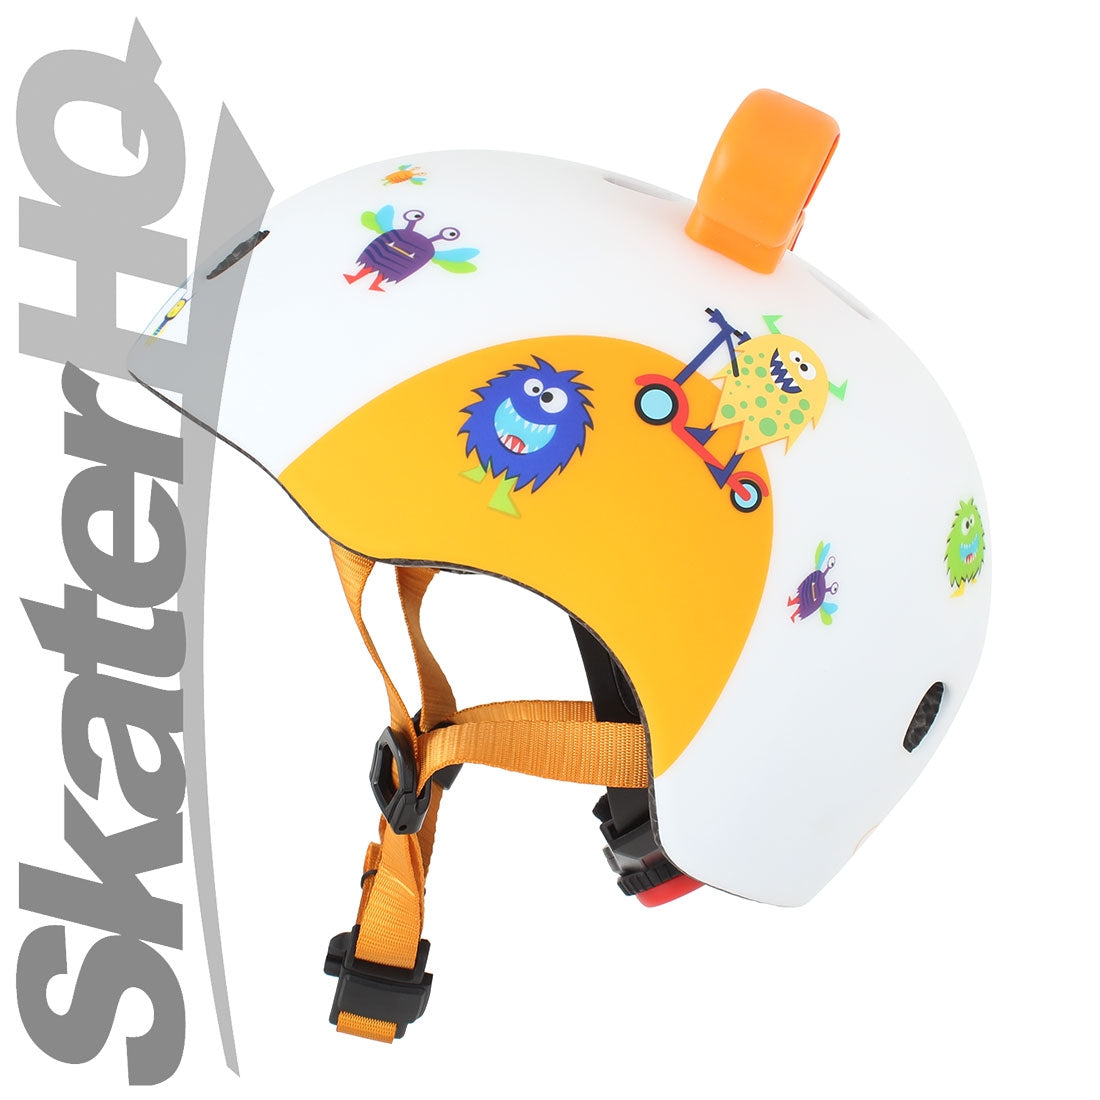 Micro 3D Monster LED Helmet - Small Helmets